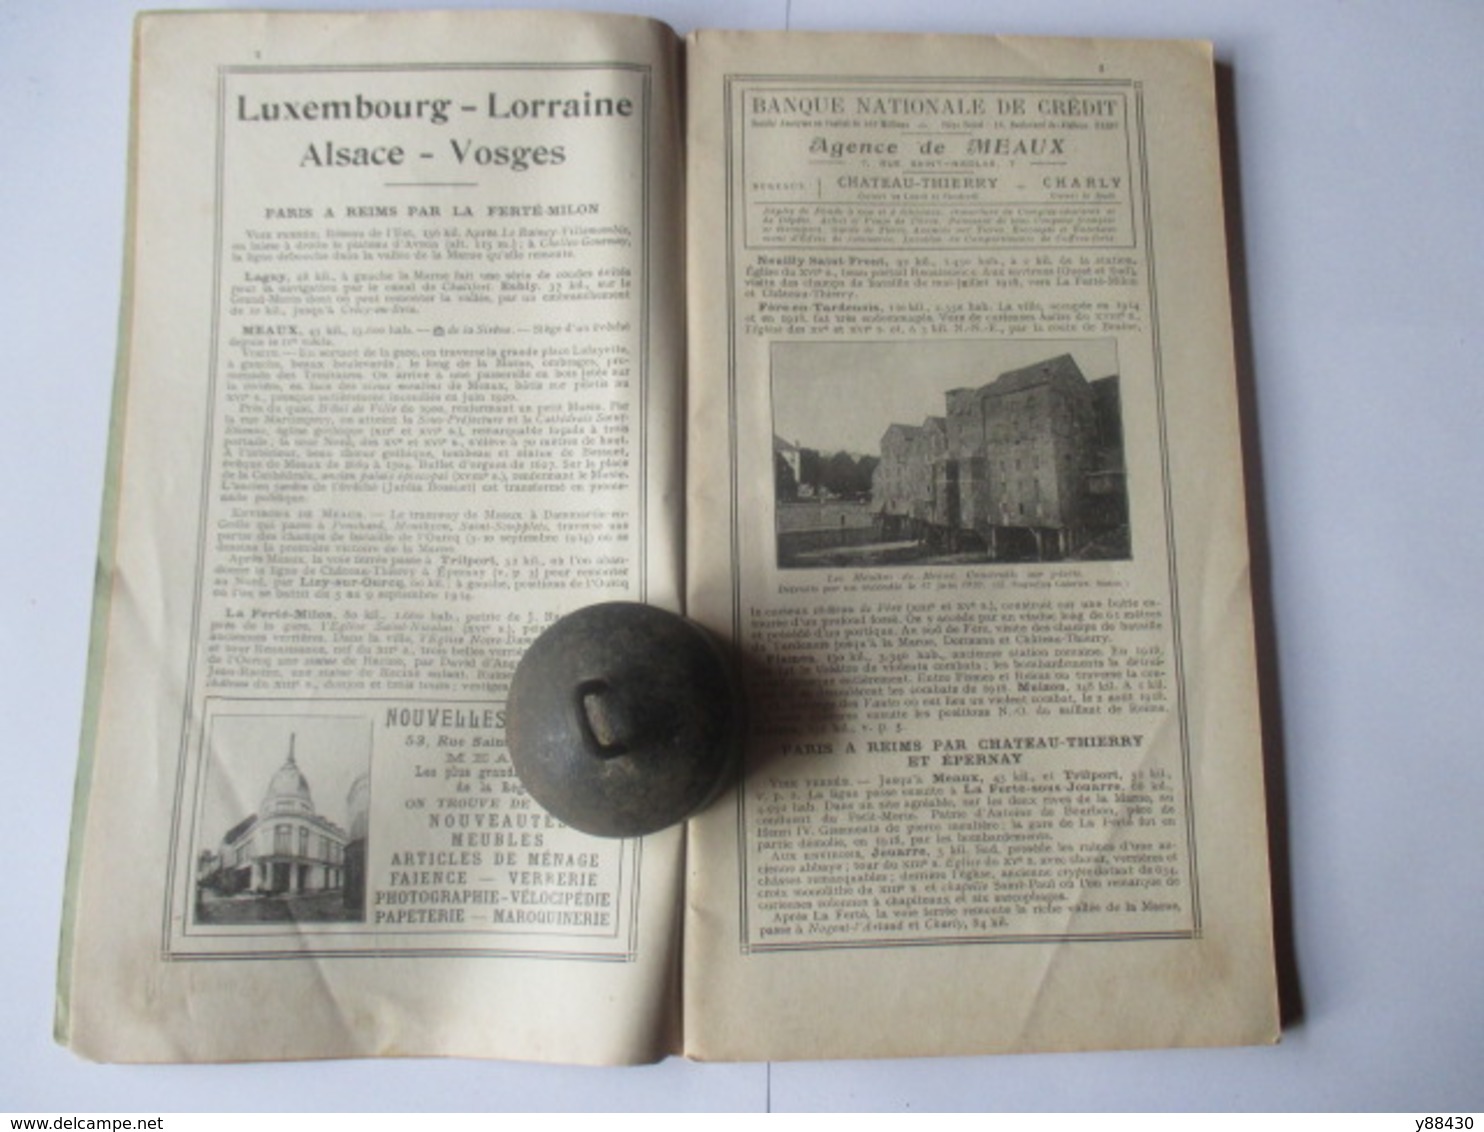 Livret Guides Du Touriste THIOLIER De 1923 - LUXEMBOURG / LORRAINE / ALSACE / VOSGES  - 124 Pages - 25 Photos - Cuadernillos Turísticos